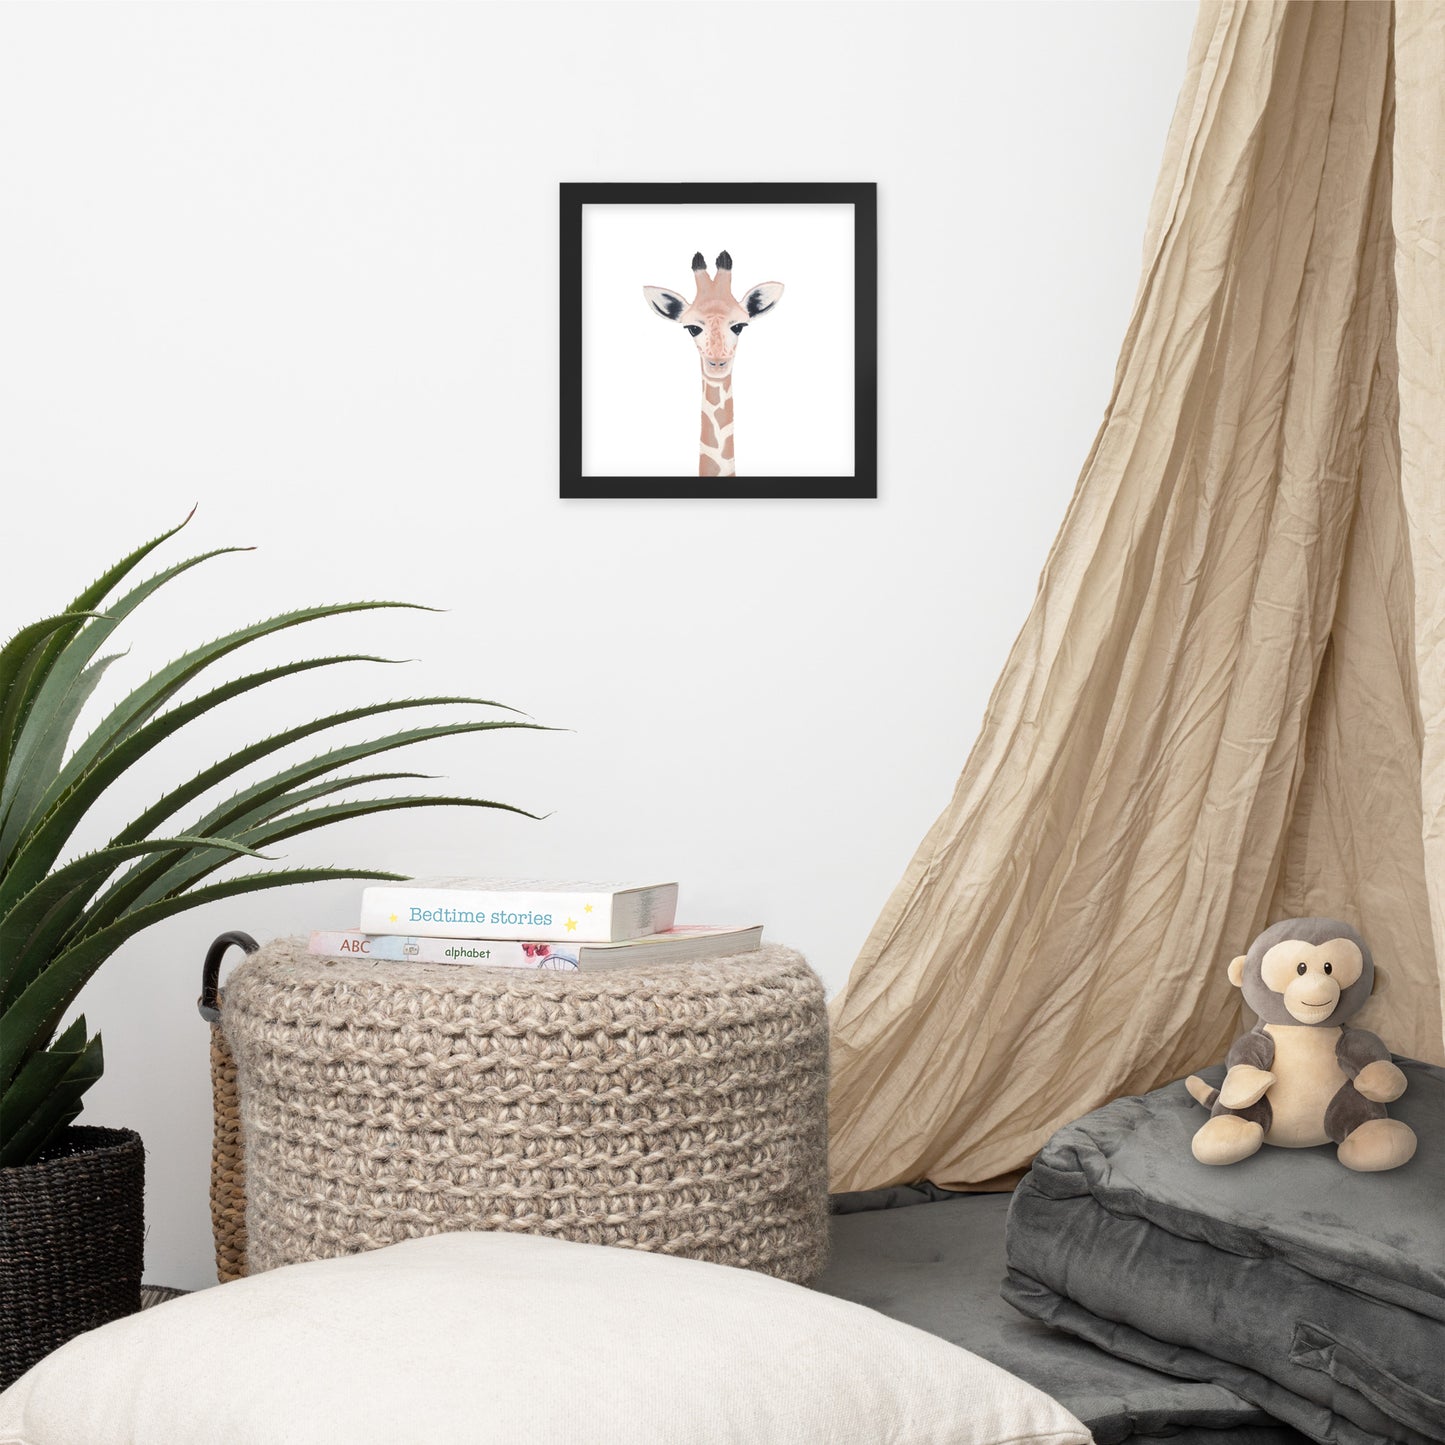 Baby Giraffe Framed poster